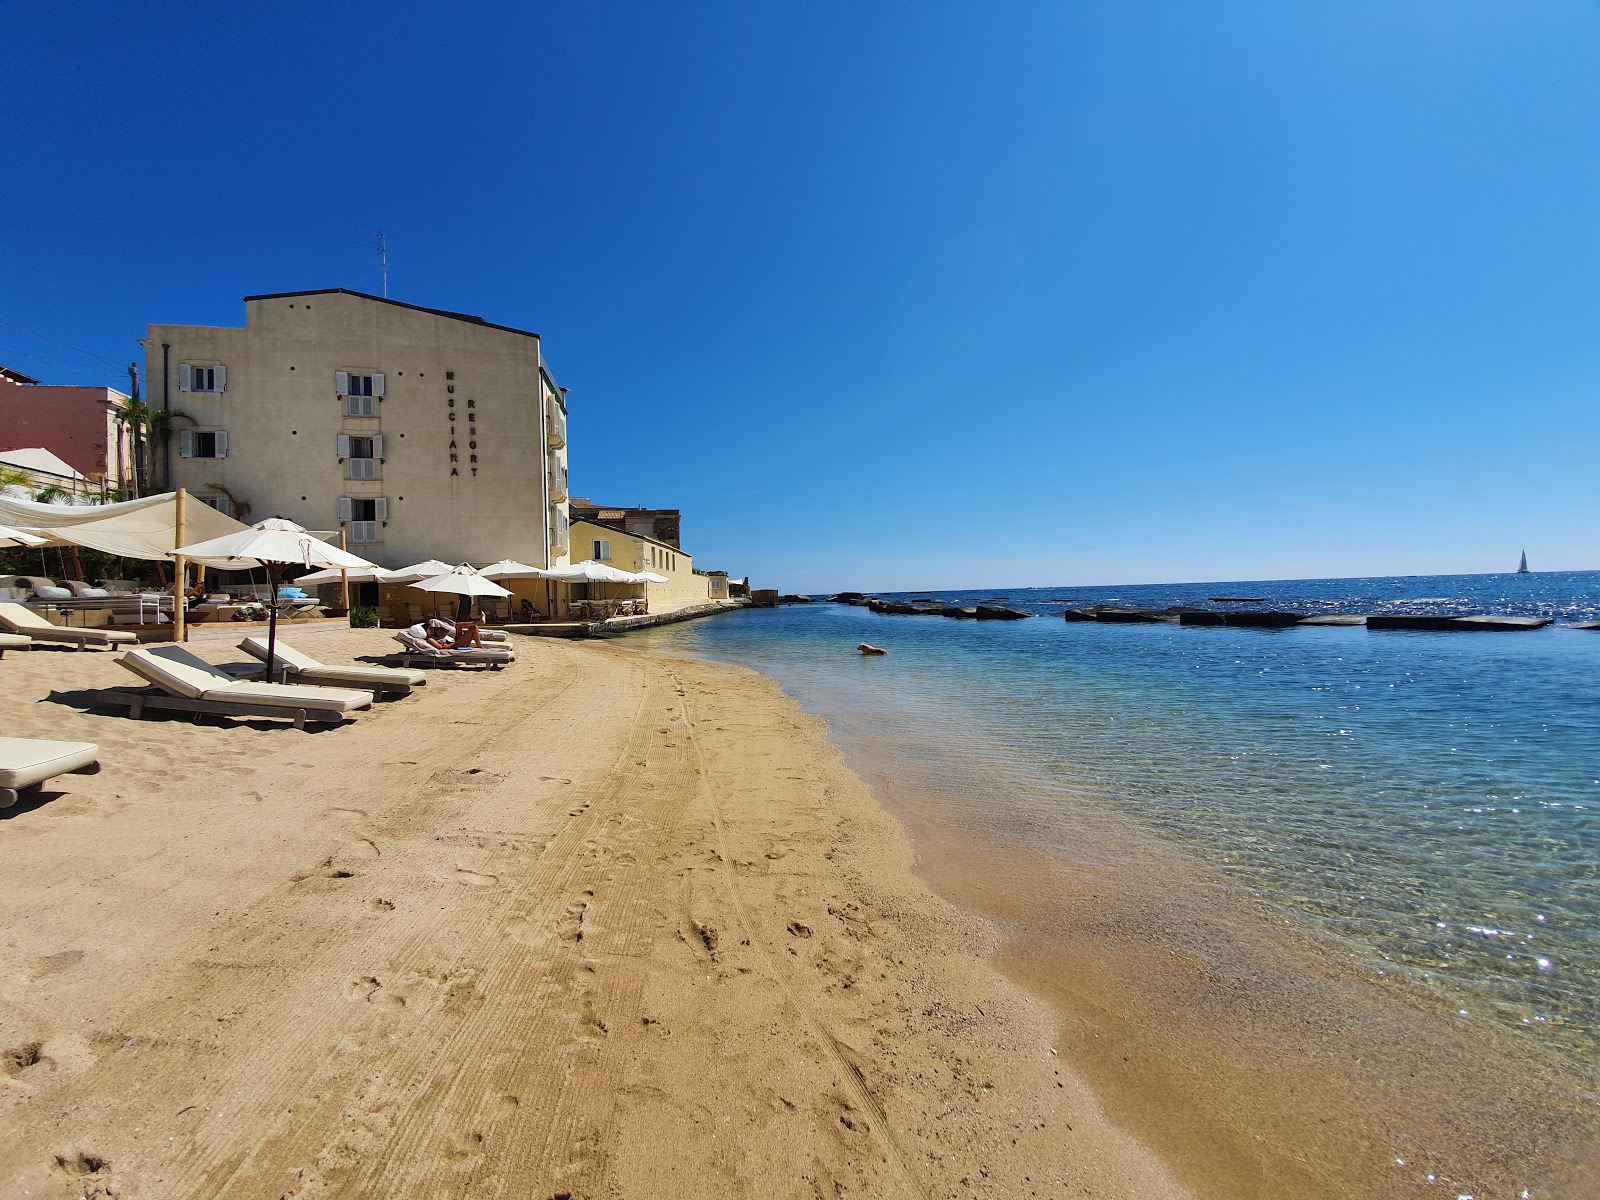 Fotografie cu Musciara Resort beach cu o suprafață de apa pură turcoaz